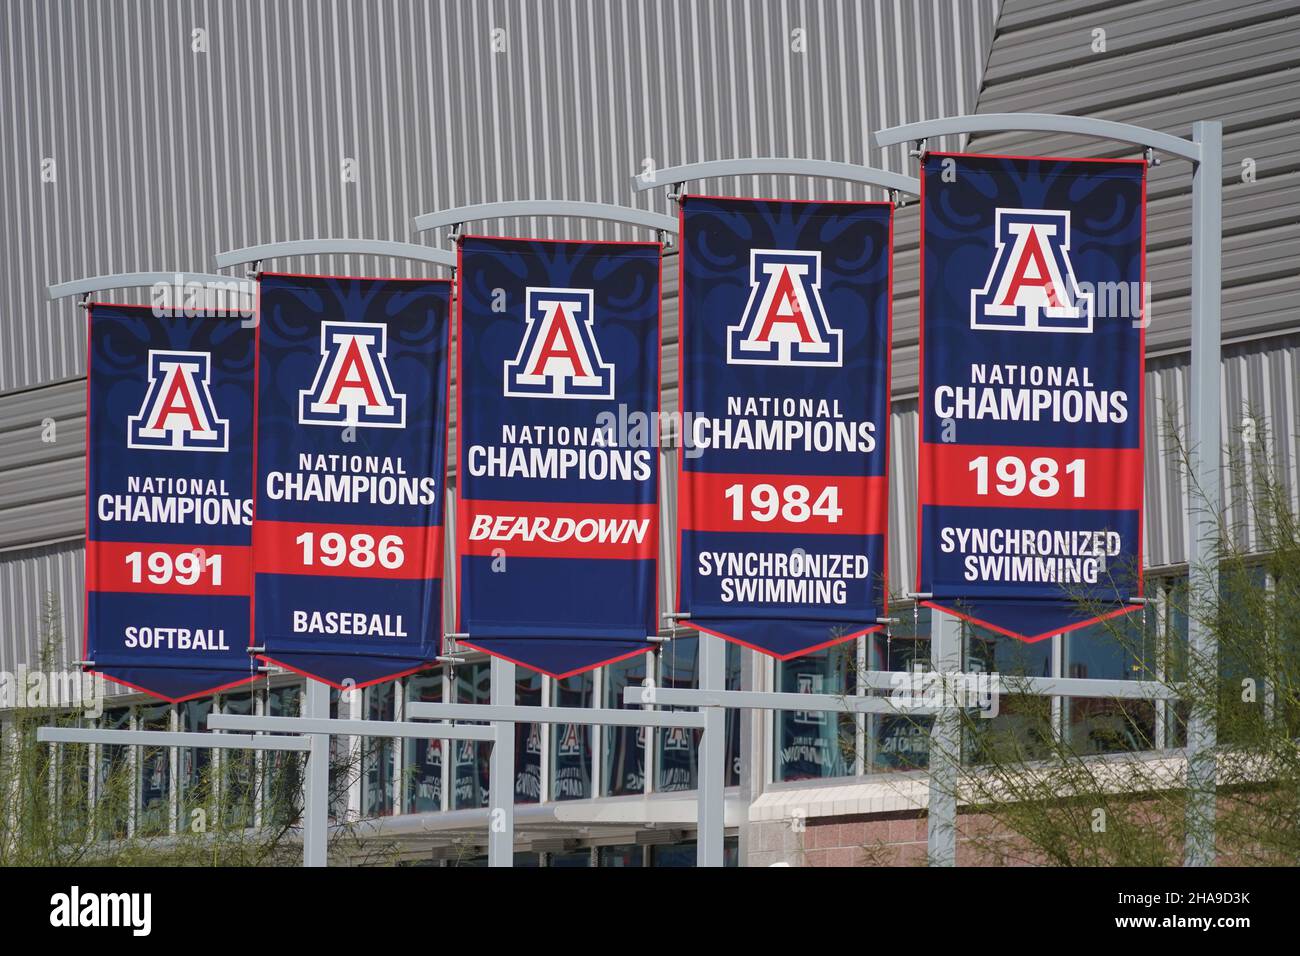 Arizona Wildcats NCAA banner campionato per softball (1991), baseball (1986), nuoto sincronizzato (1981 e 1984 sono visti al Cole e Jeanni Foto Stock